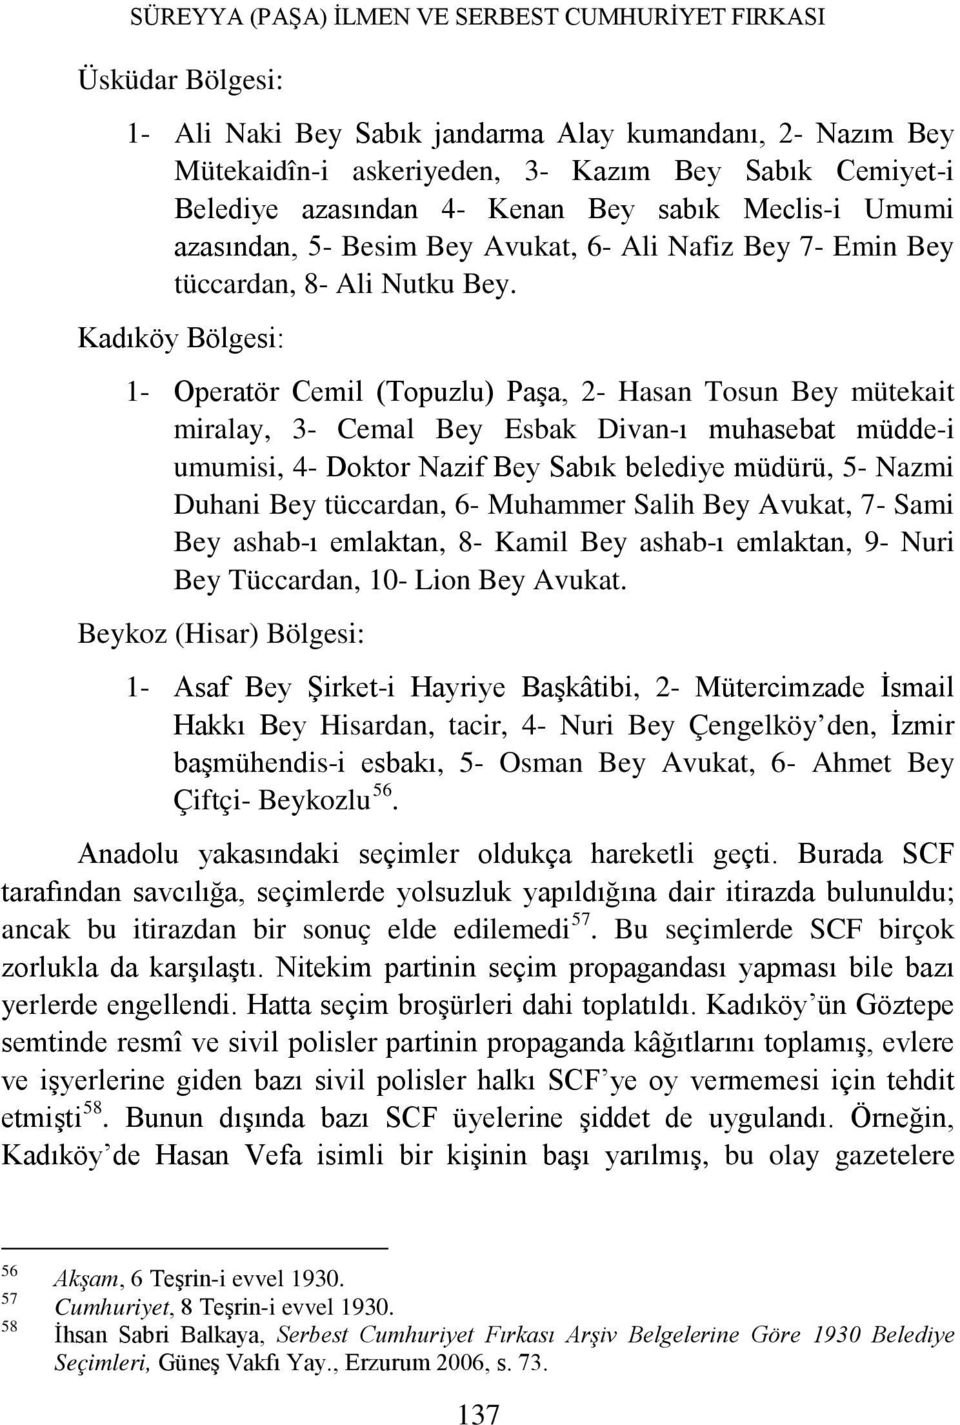 Kadıköy Bölgesi: 1- Operatör Cemil (Topuzlu) Paşa, 2- Hasan Tosun Bey mütekait miralay, 3- Cemal Bey Esbak Divan-ı muhasebat müdde-i umumisi, 4- Doktor Nazif Bey Sabık belediye müdürü, 5- Nazmi